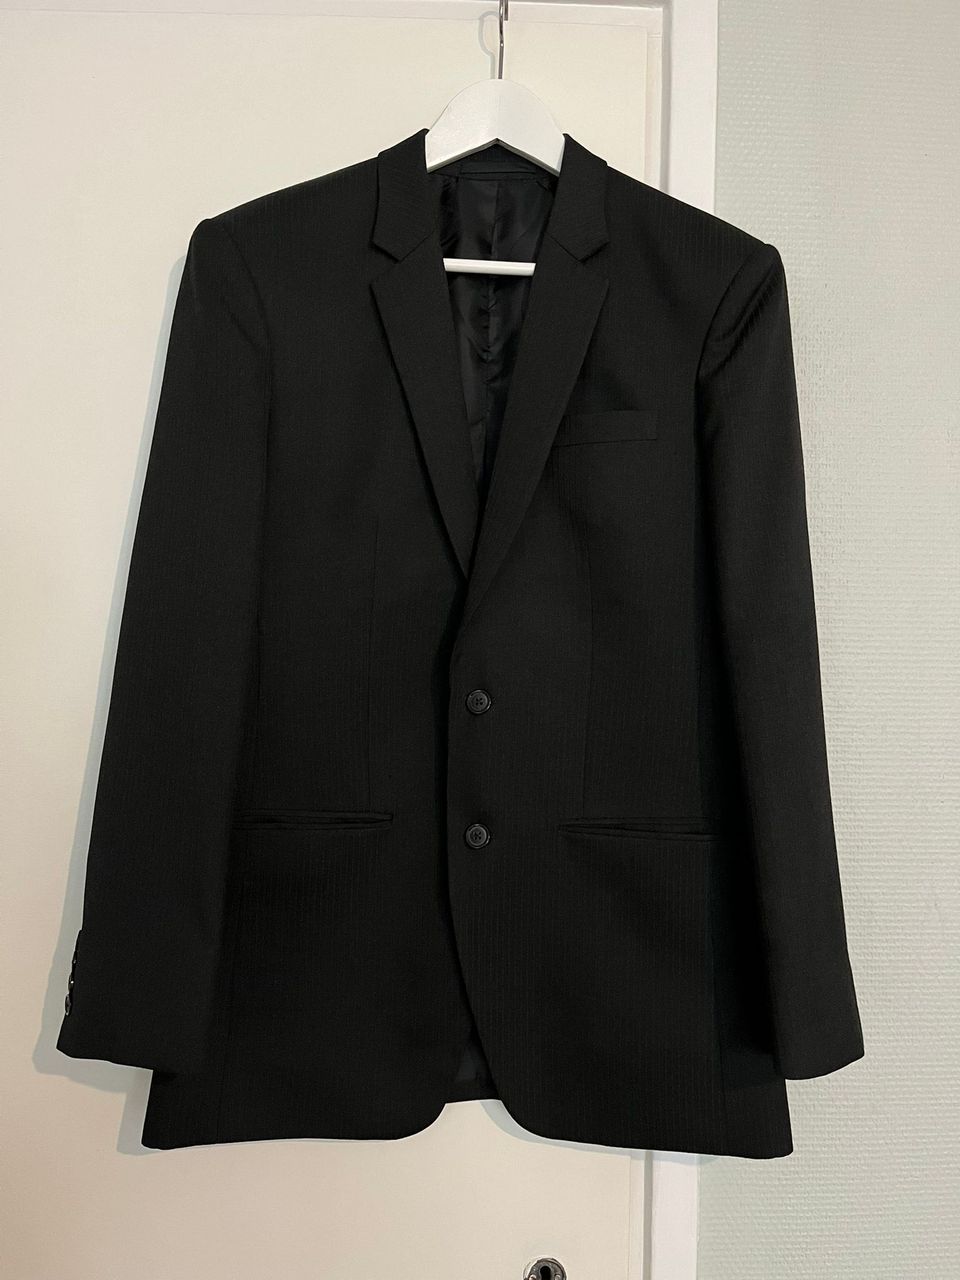 Miesten siisti musta puku, takki 48, housut 32